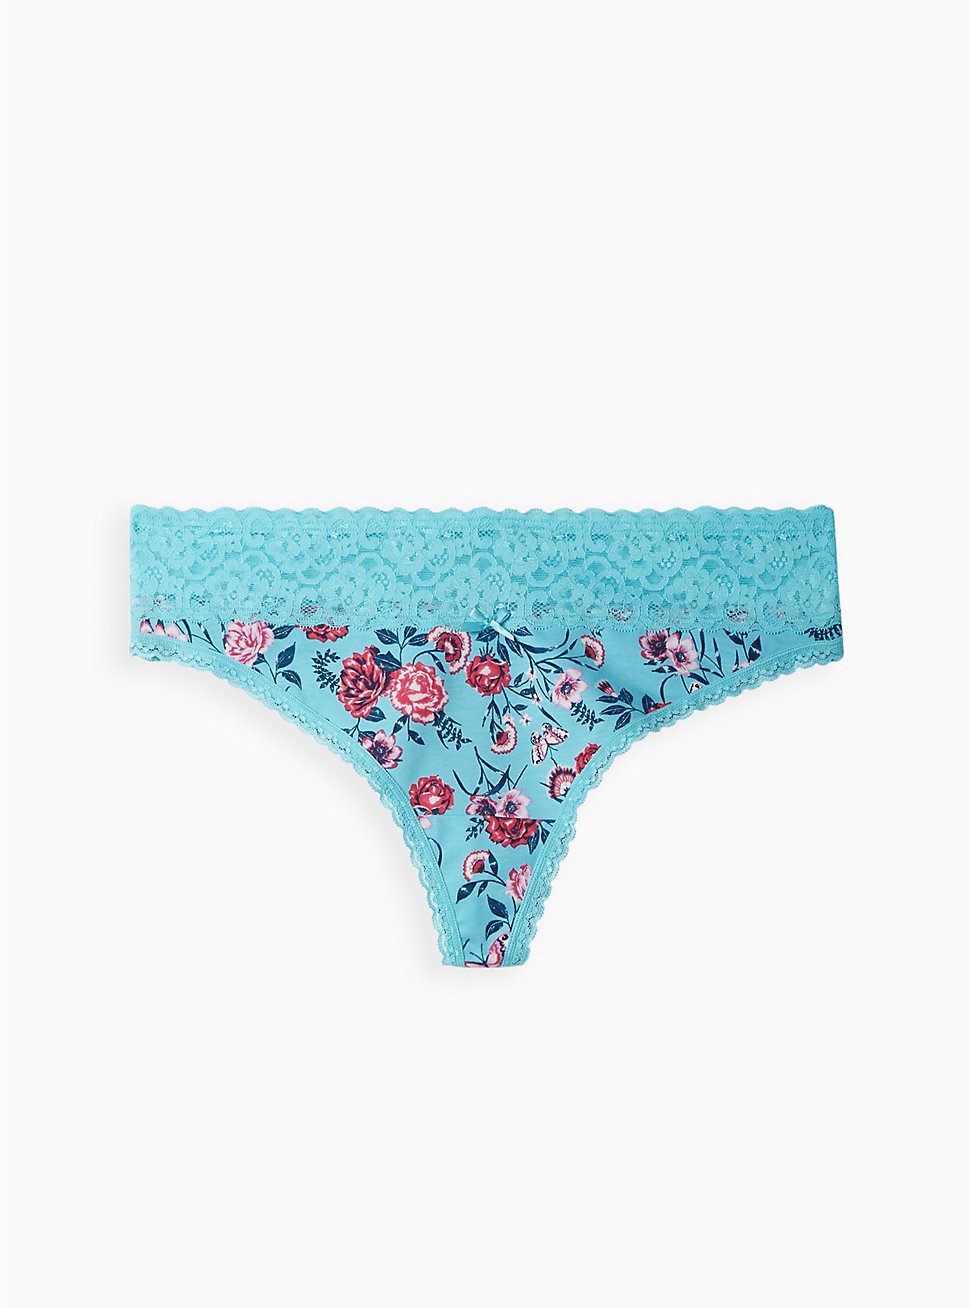 Plus Size Wide Lace Trim Thong Panty - Cotton Floral Blue, NATURAL LIGHT FLORAL BLUE, hi-res